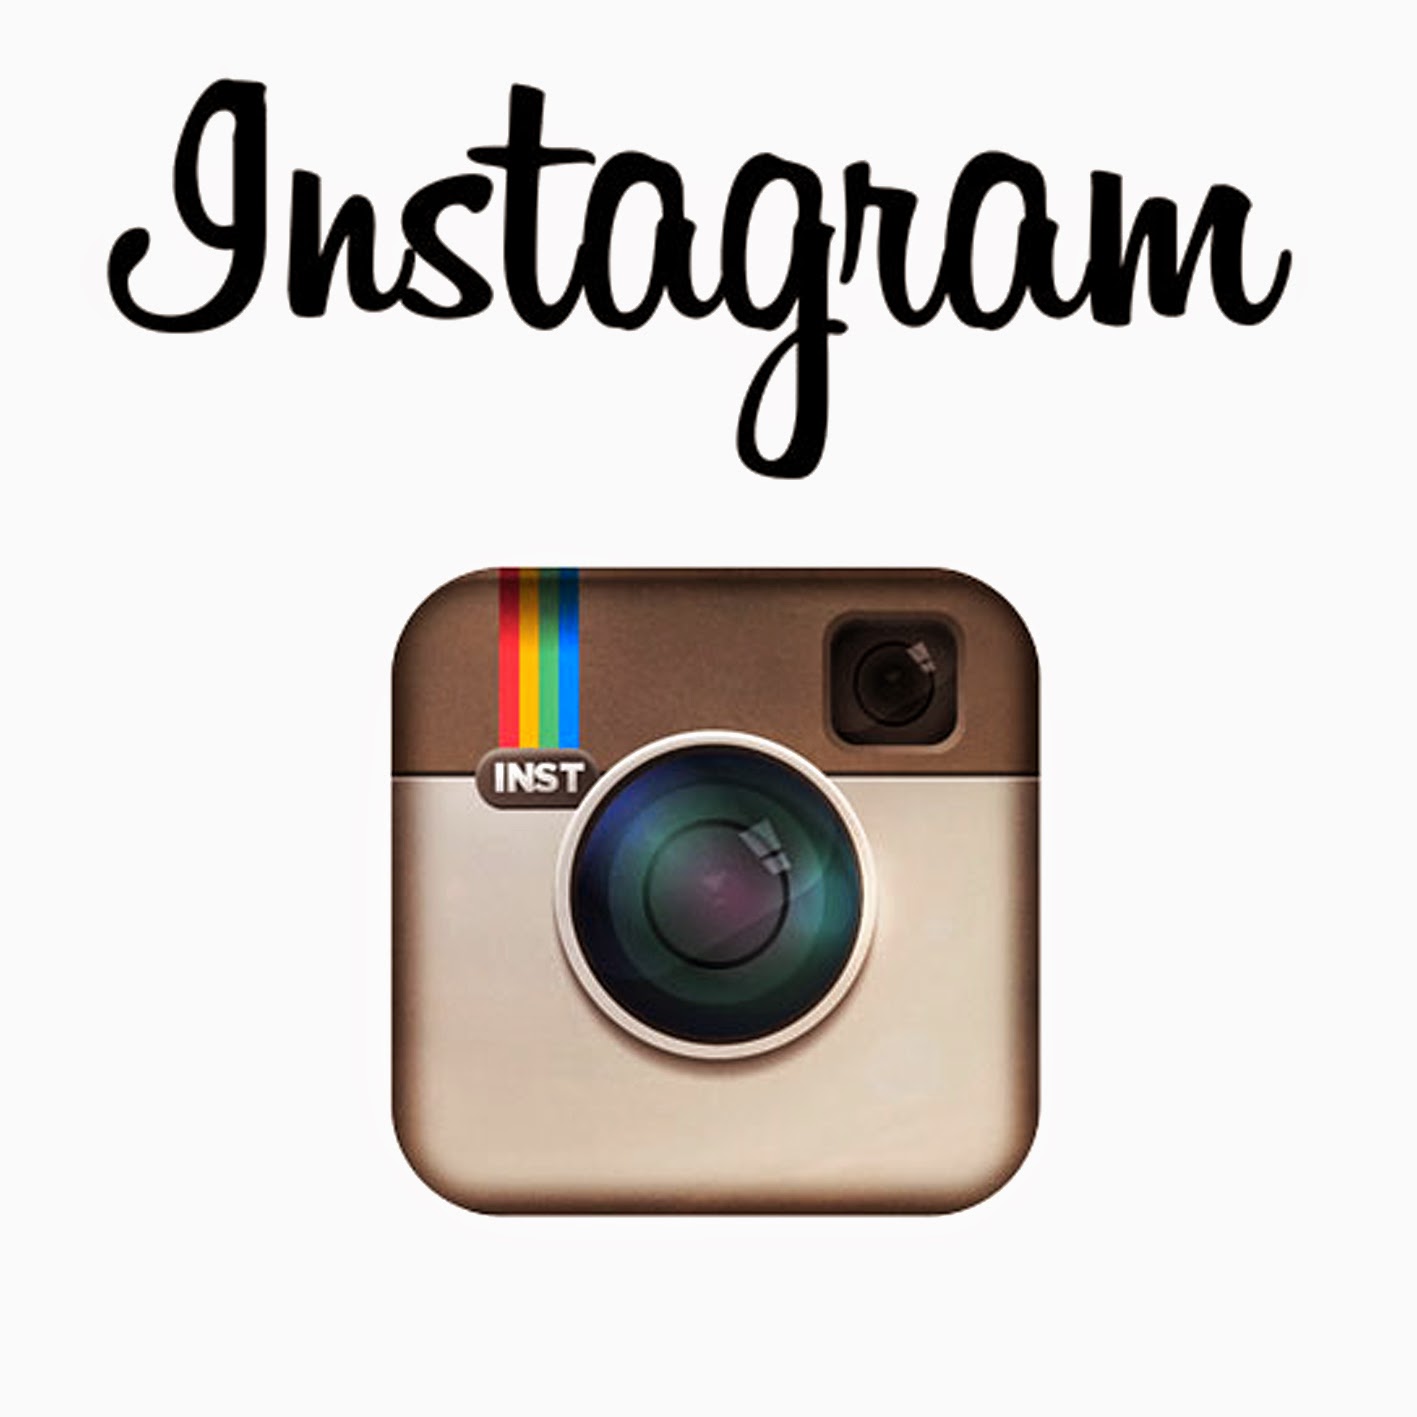 Follow me On Instagram!